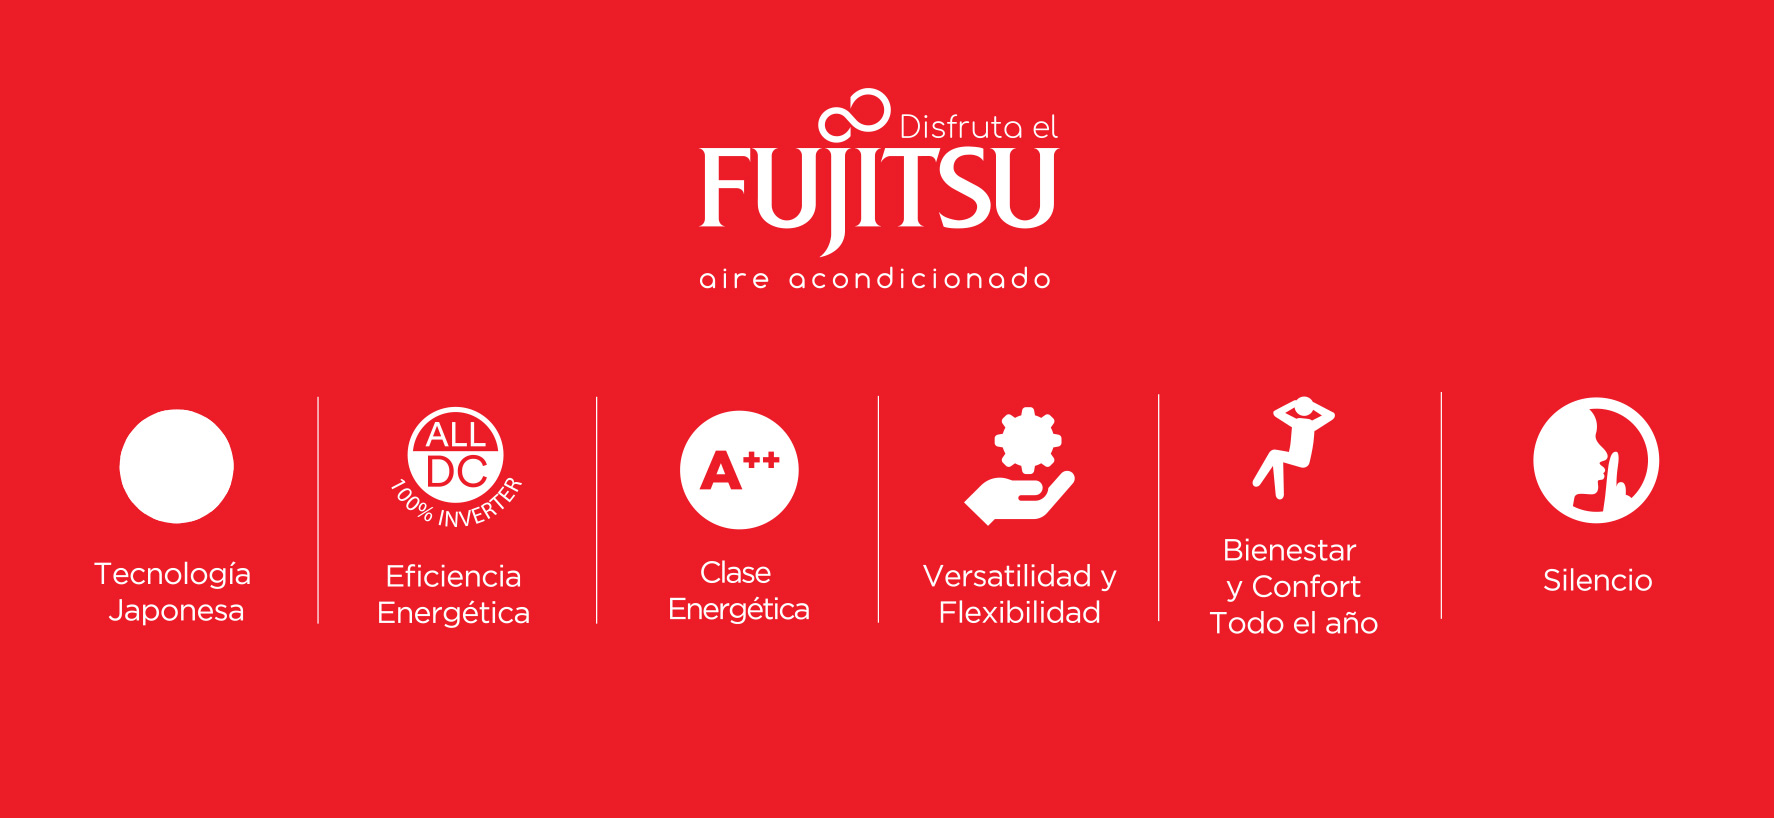 Fujitsu, Máximo Confort Mínimo Consumo